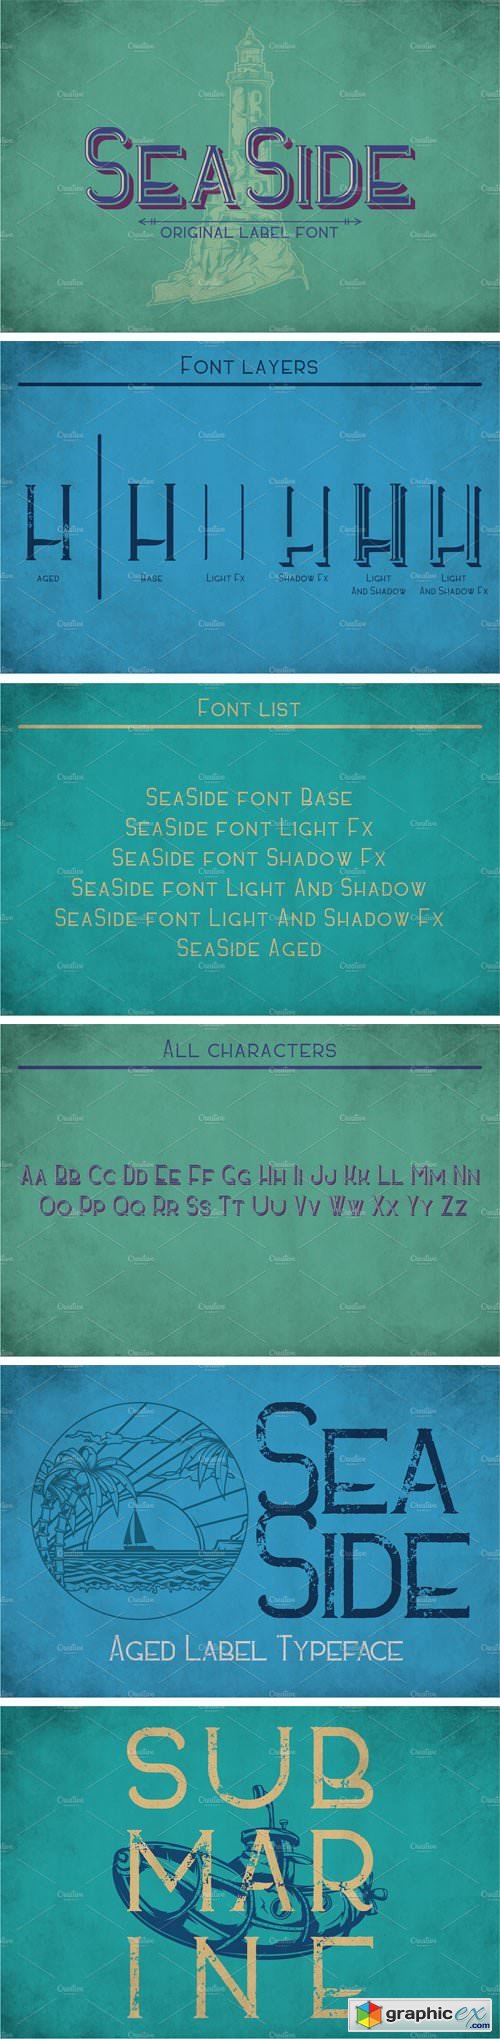 Sea Side Vintage Label Typeface